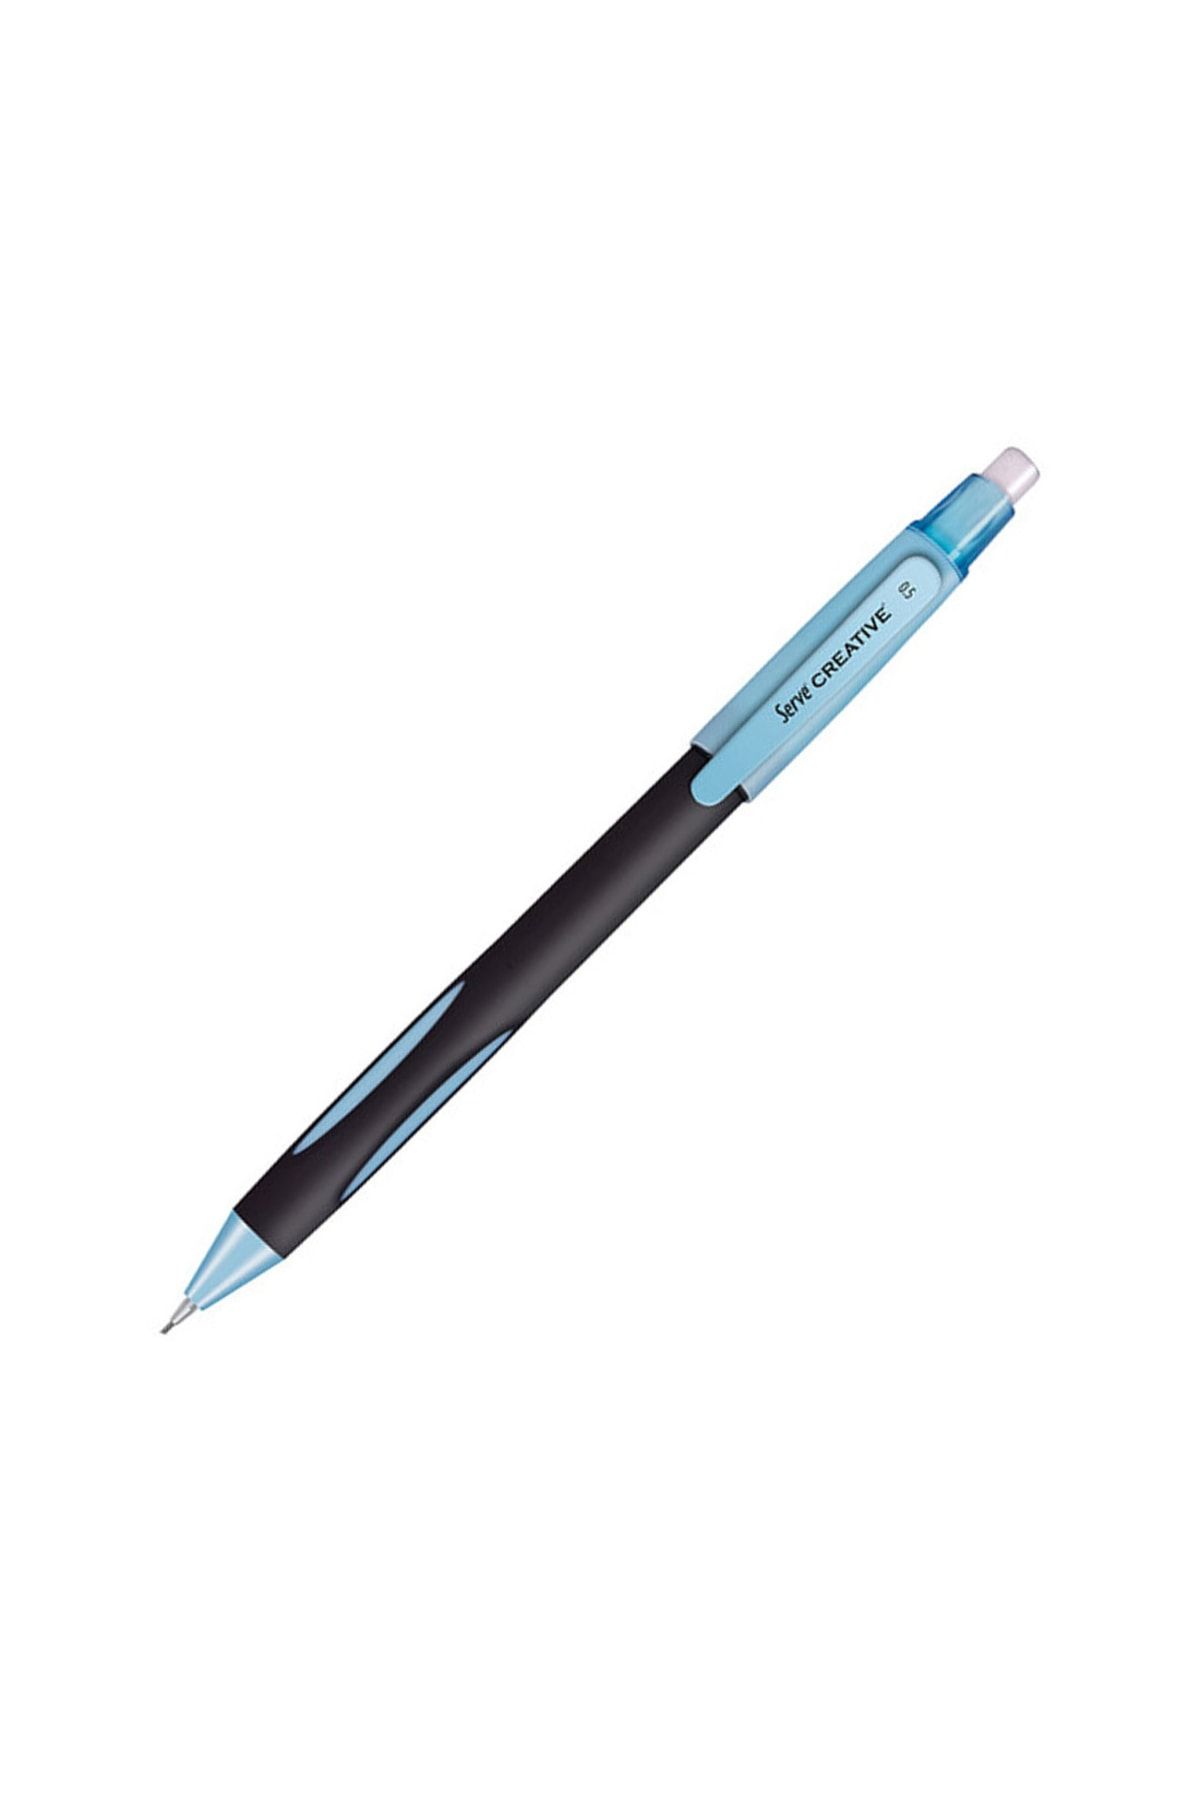 Serve Creative Mekanik Kurşun Kalem 0.5 Mm Açık Mavi